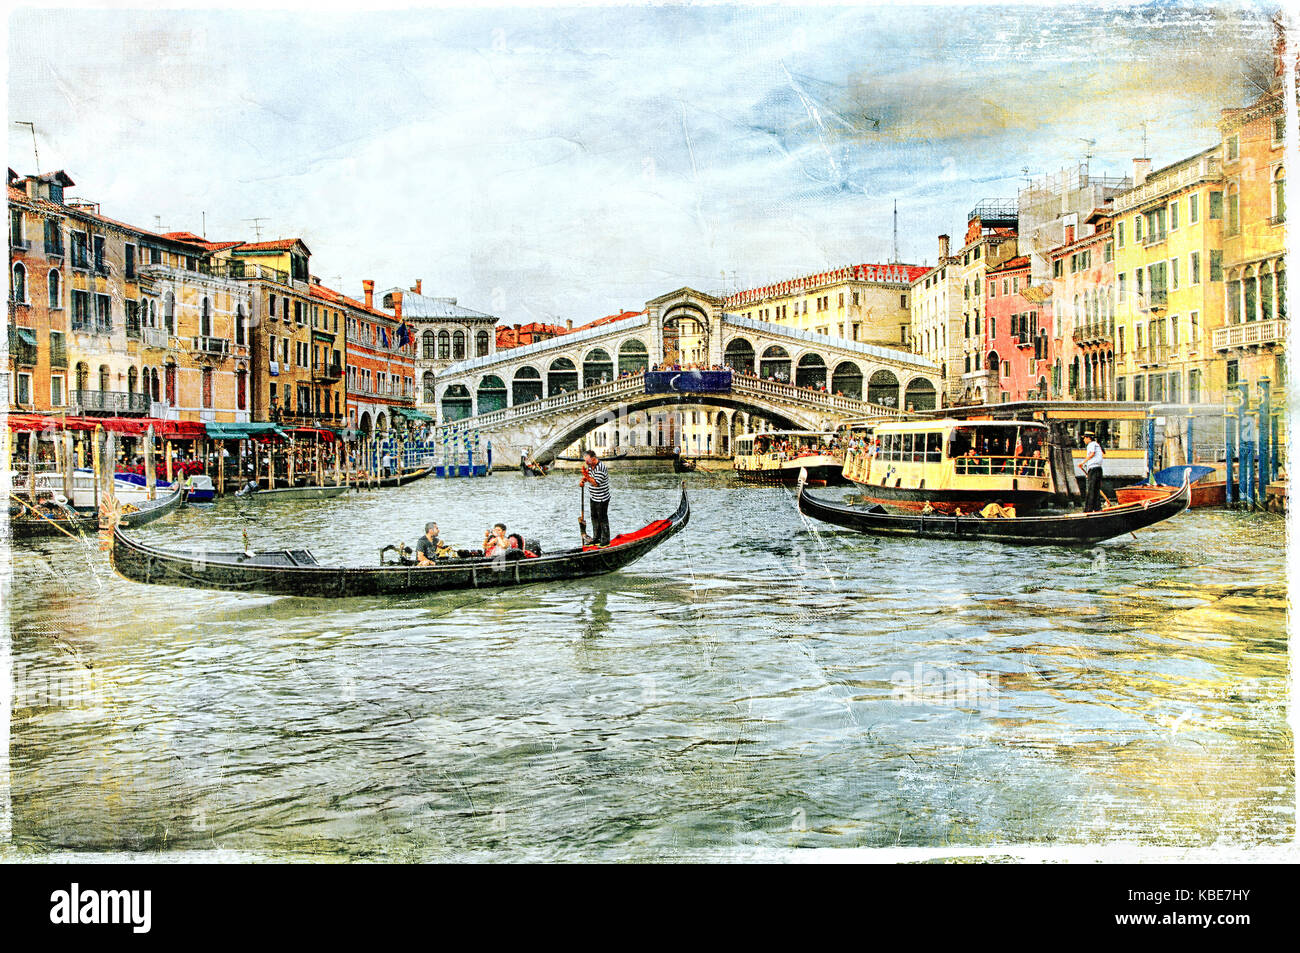 Belle romantique Venise - photo artistique dans le style de peinture Banque D'Images